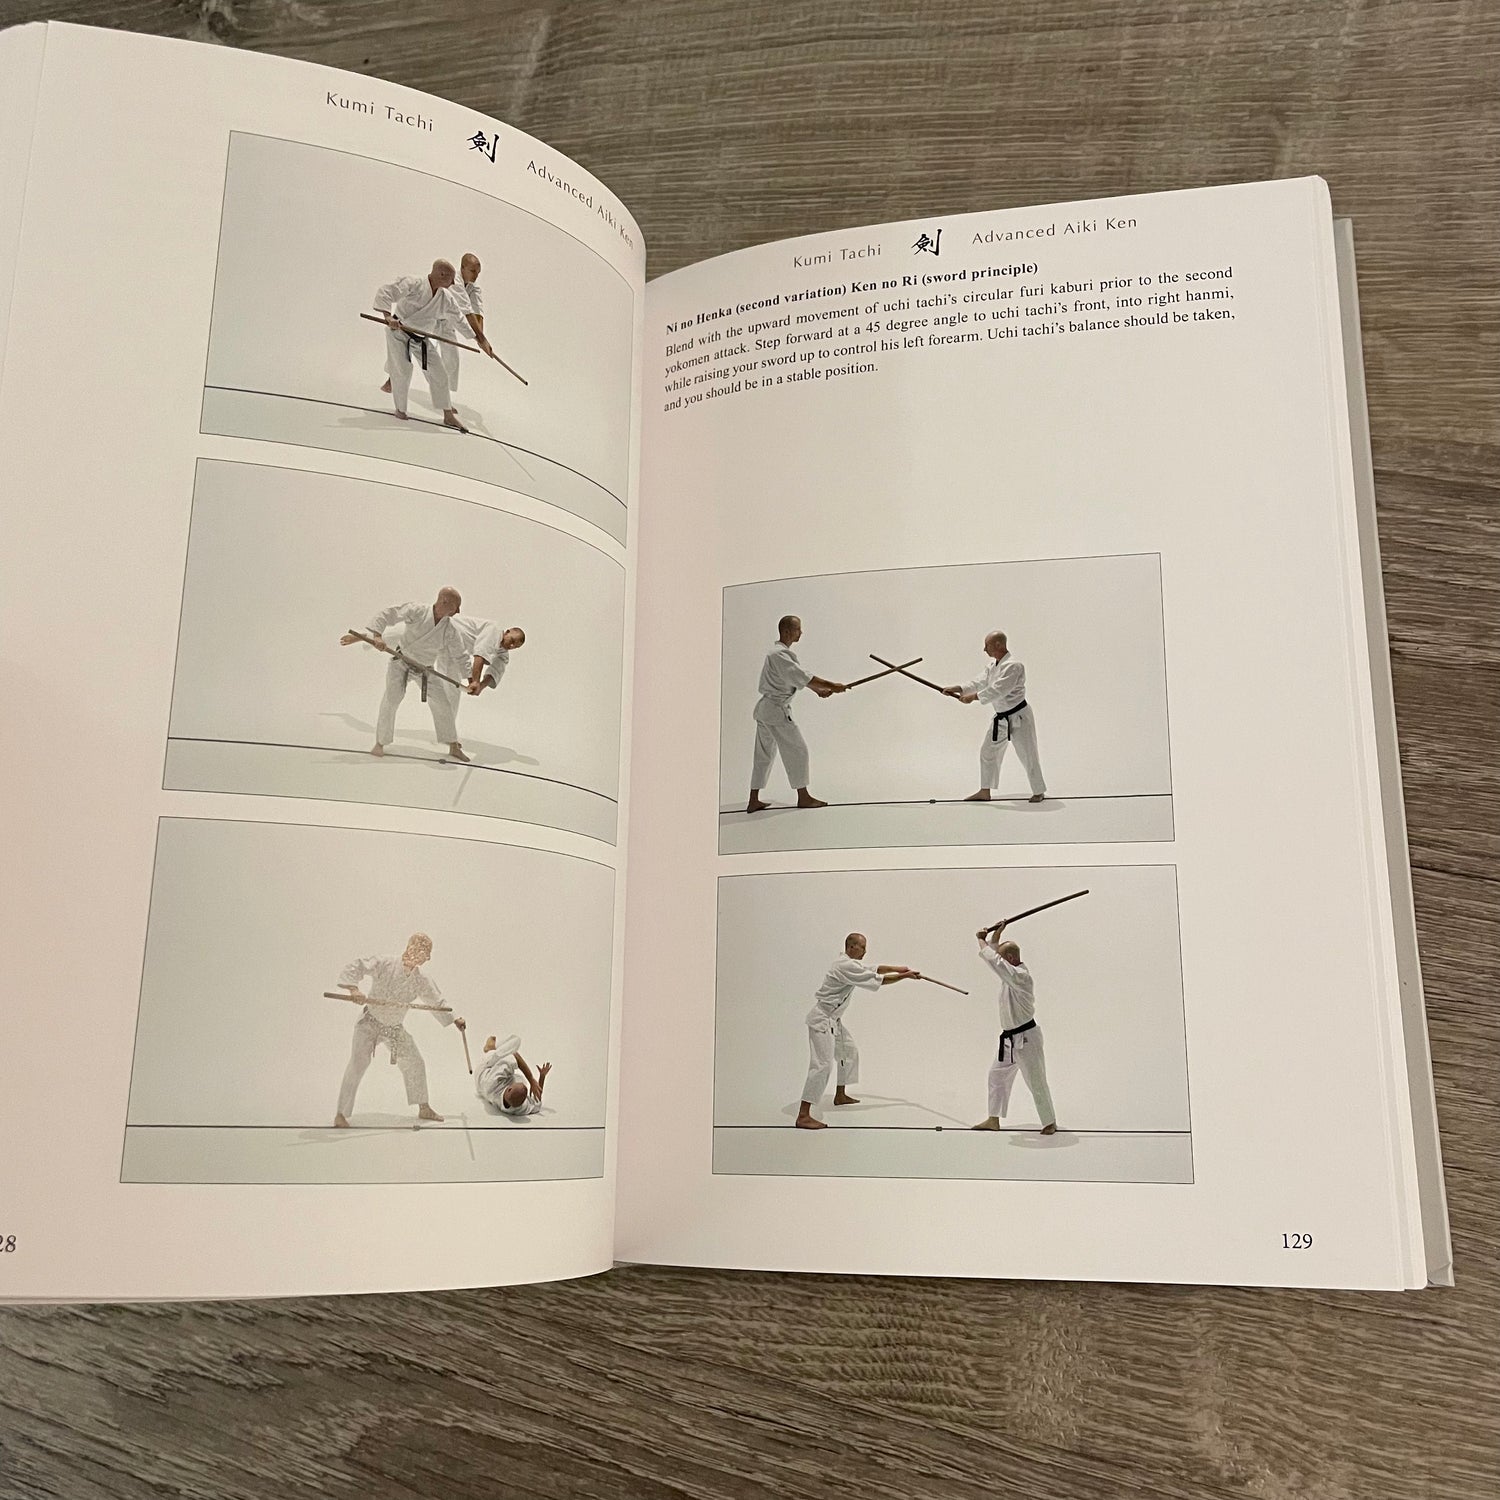 吹技 Basic & Advanced Aiki Ken & Aiki Jo 特別版ブック イーサン・ワイスガード著 (ハードカバー)